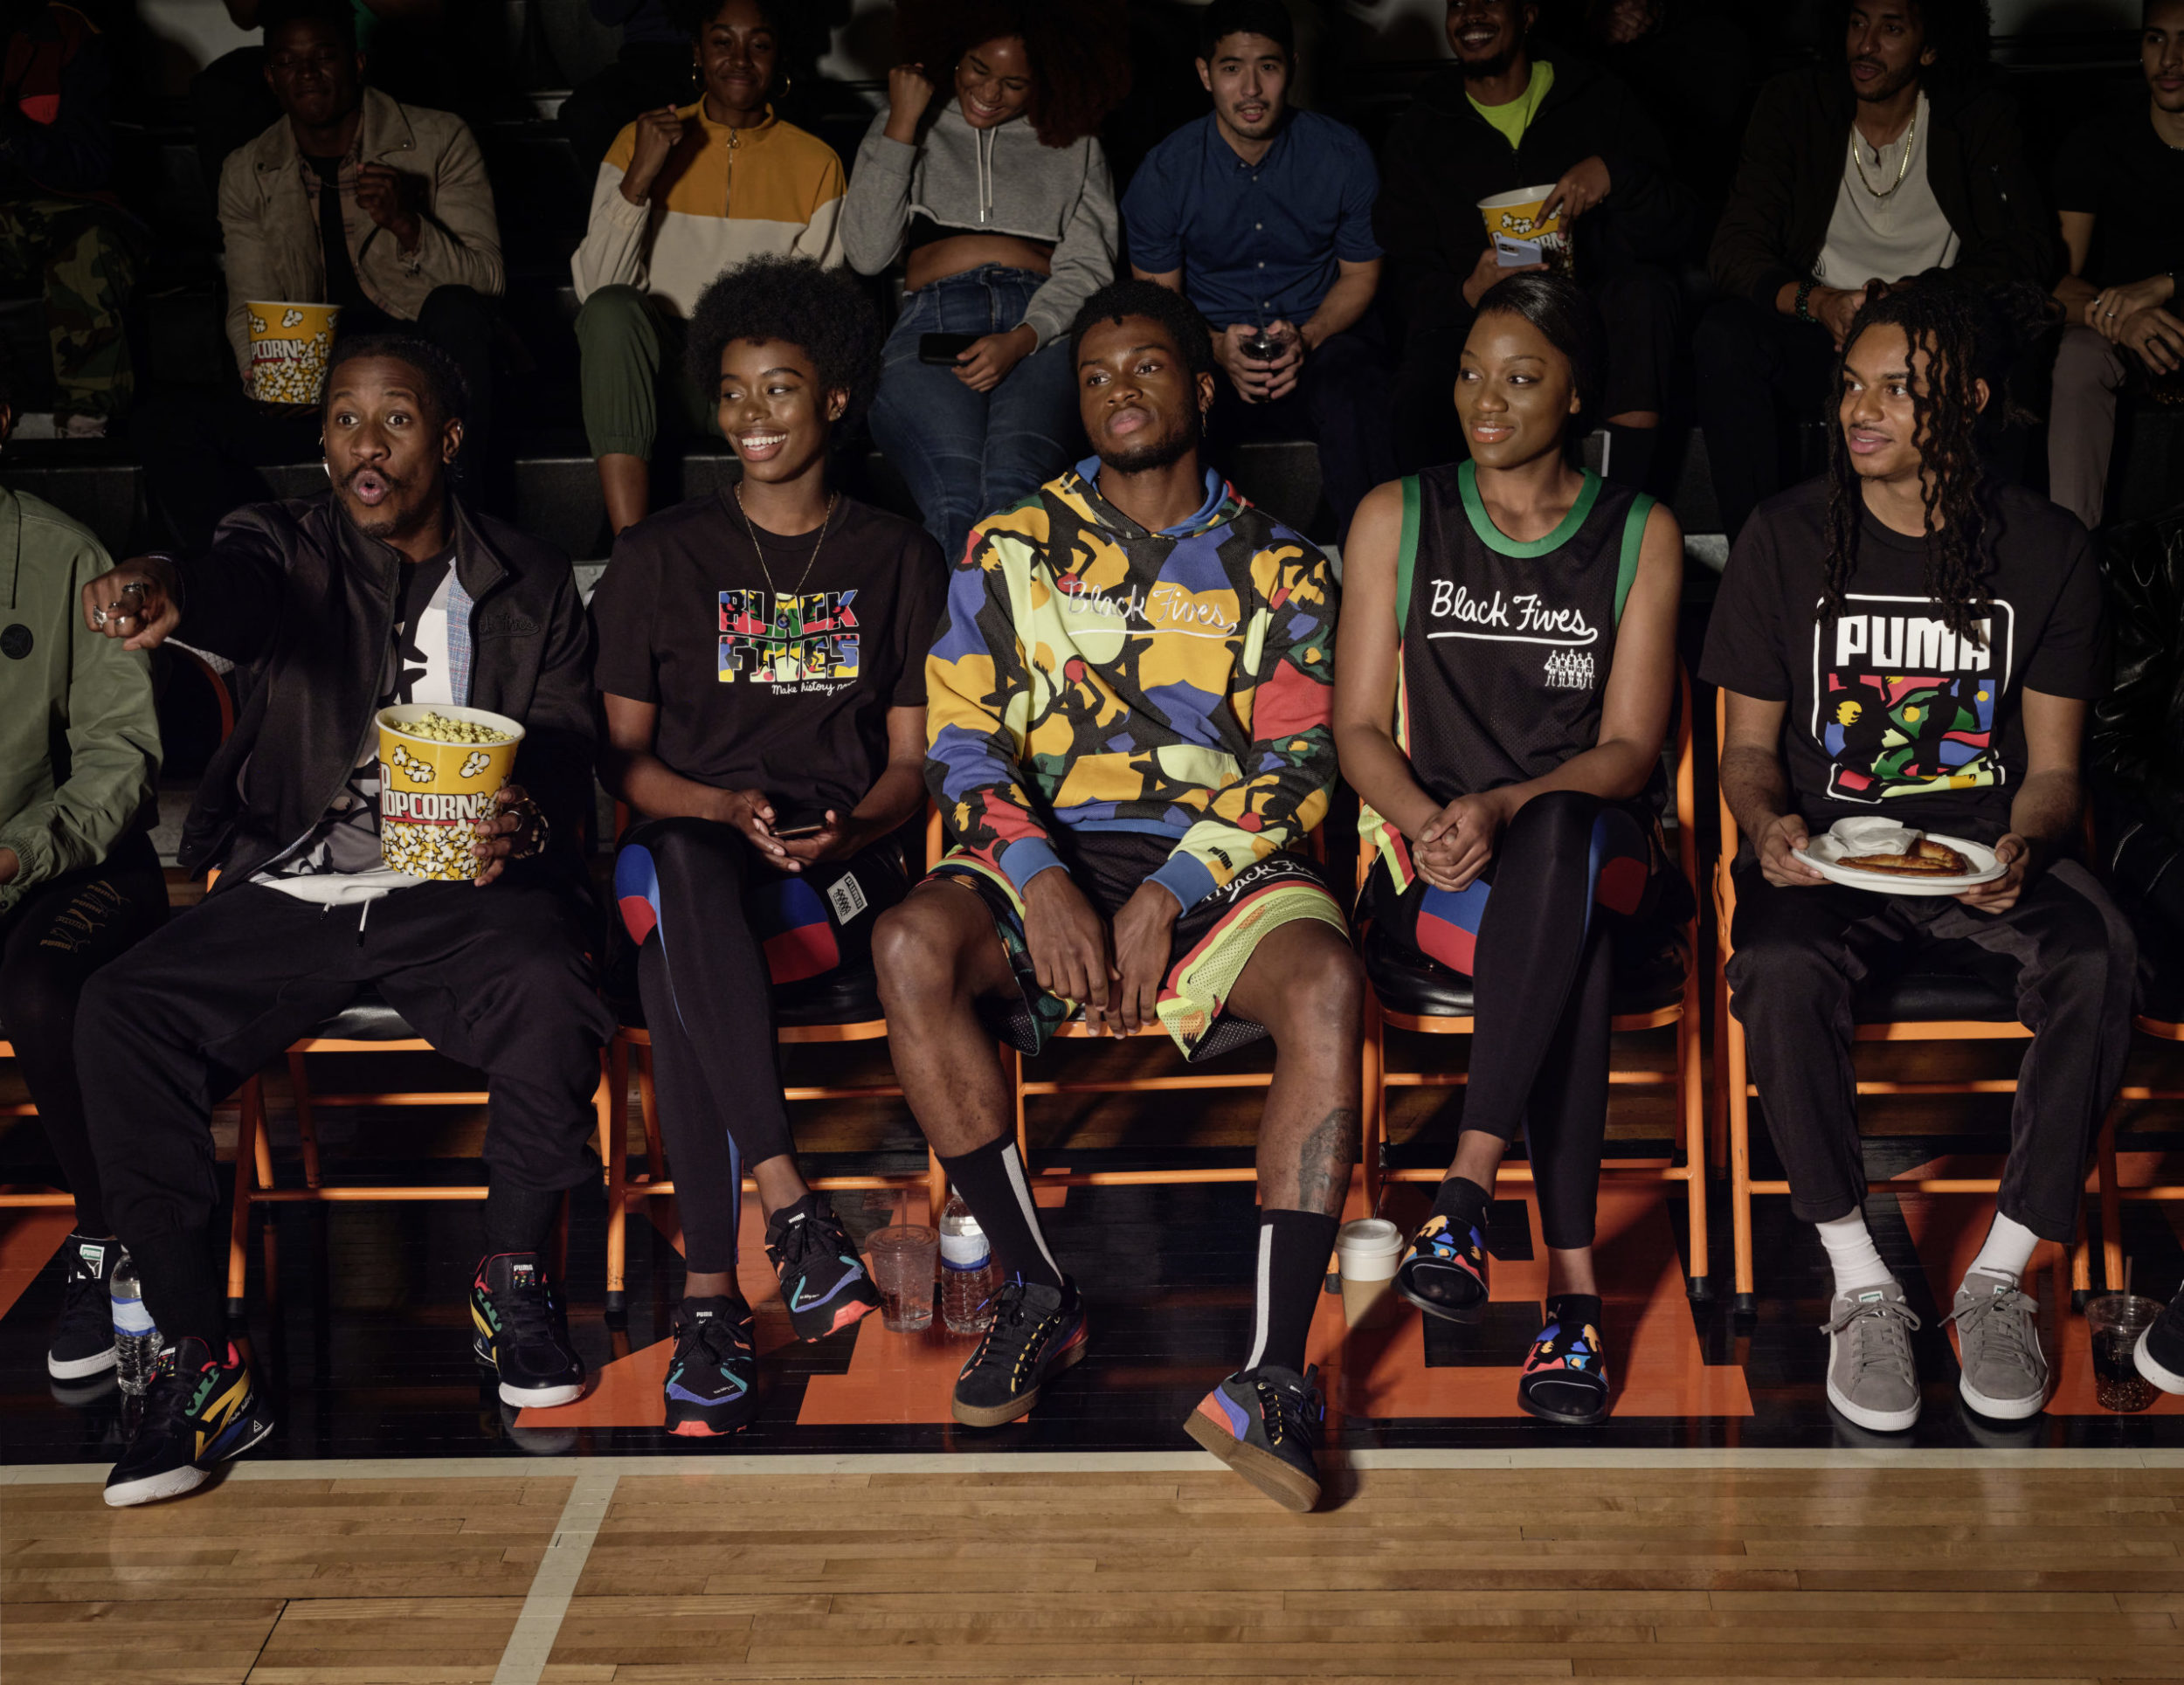 la black five foundation mise en avant, trois jeunes noires regardent un match de basket-ball, une fille parmi eux, tous les spectateurs sont noirs et le pop-corn est au rendez-vous